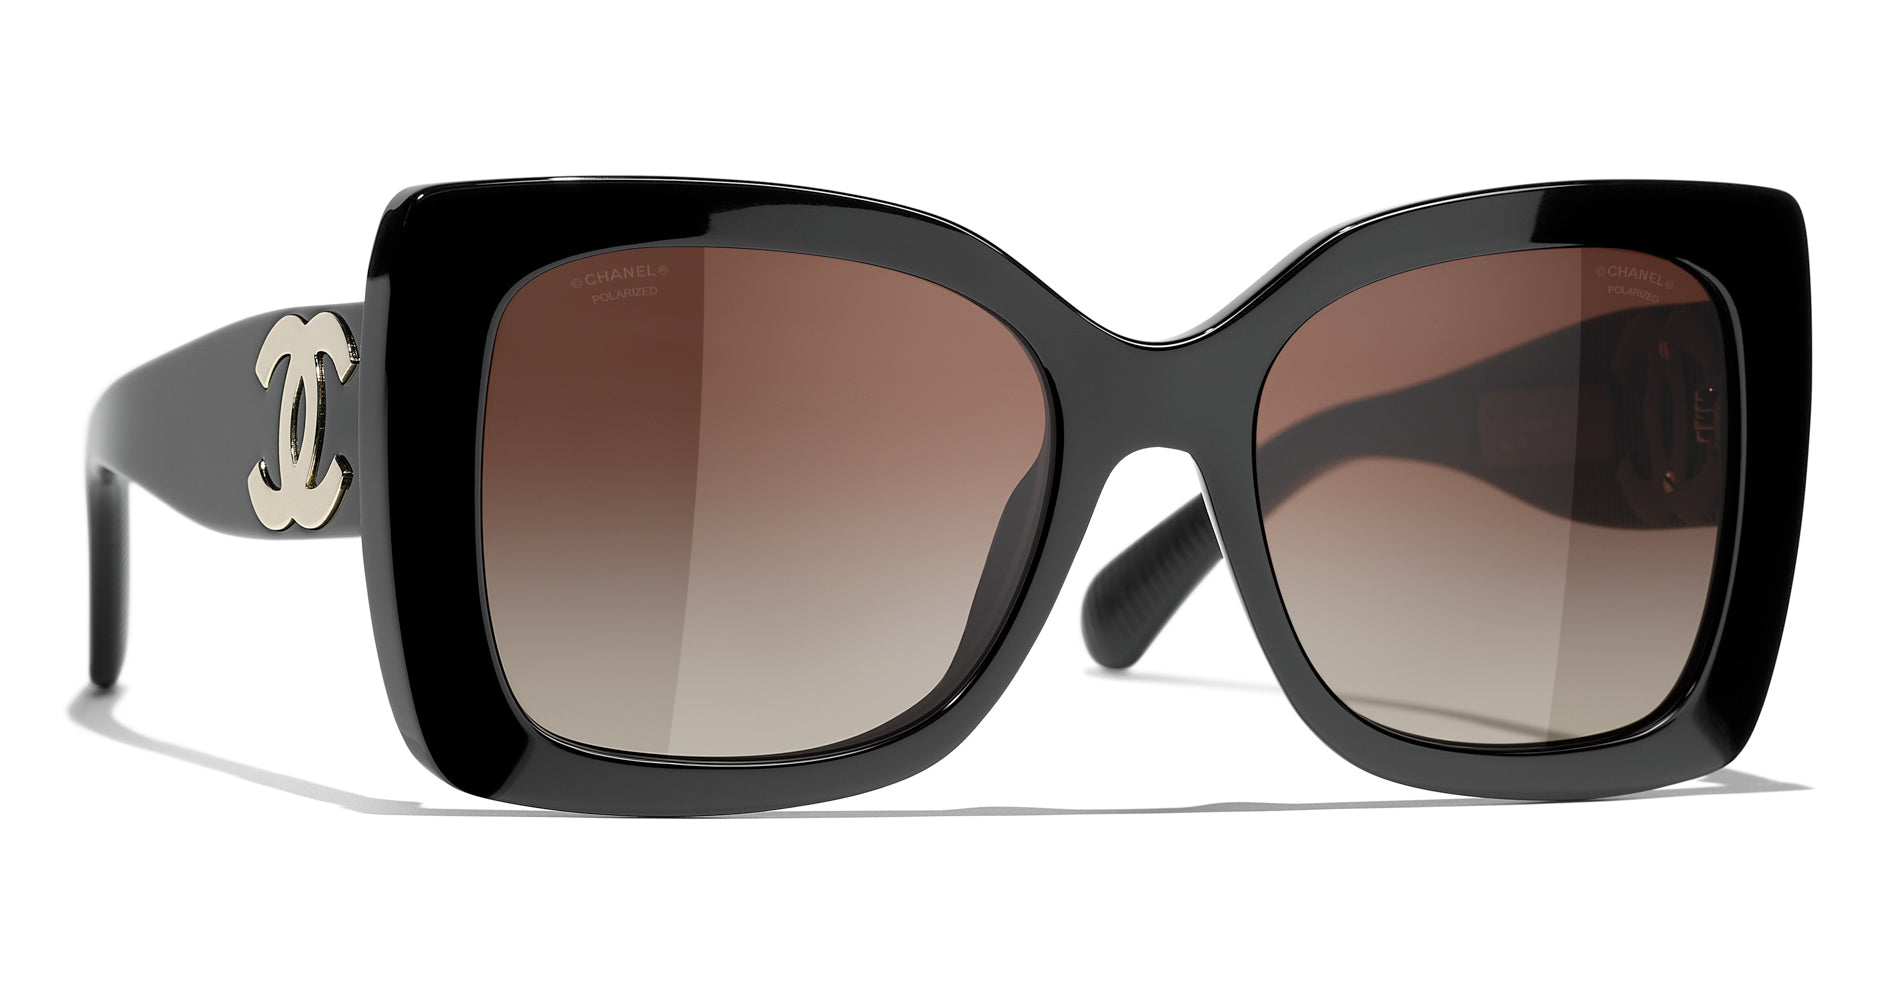 Chanel 5494 Sunglasses Black/Brown Square Women